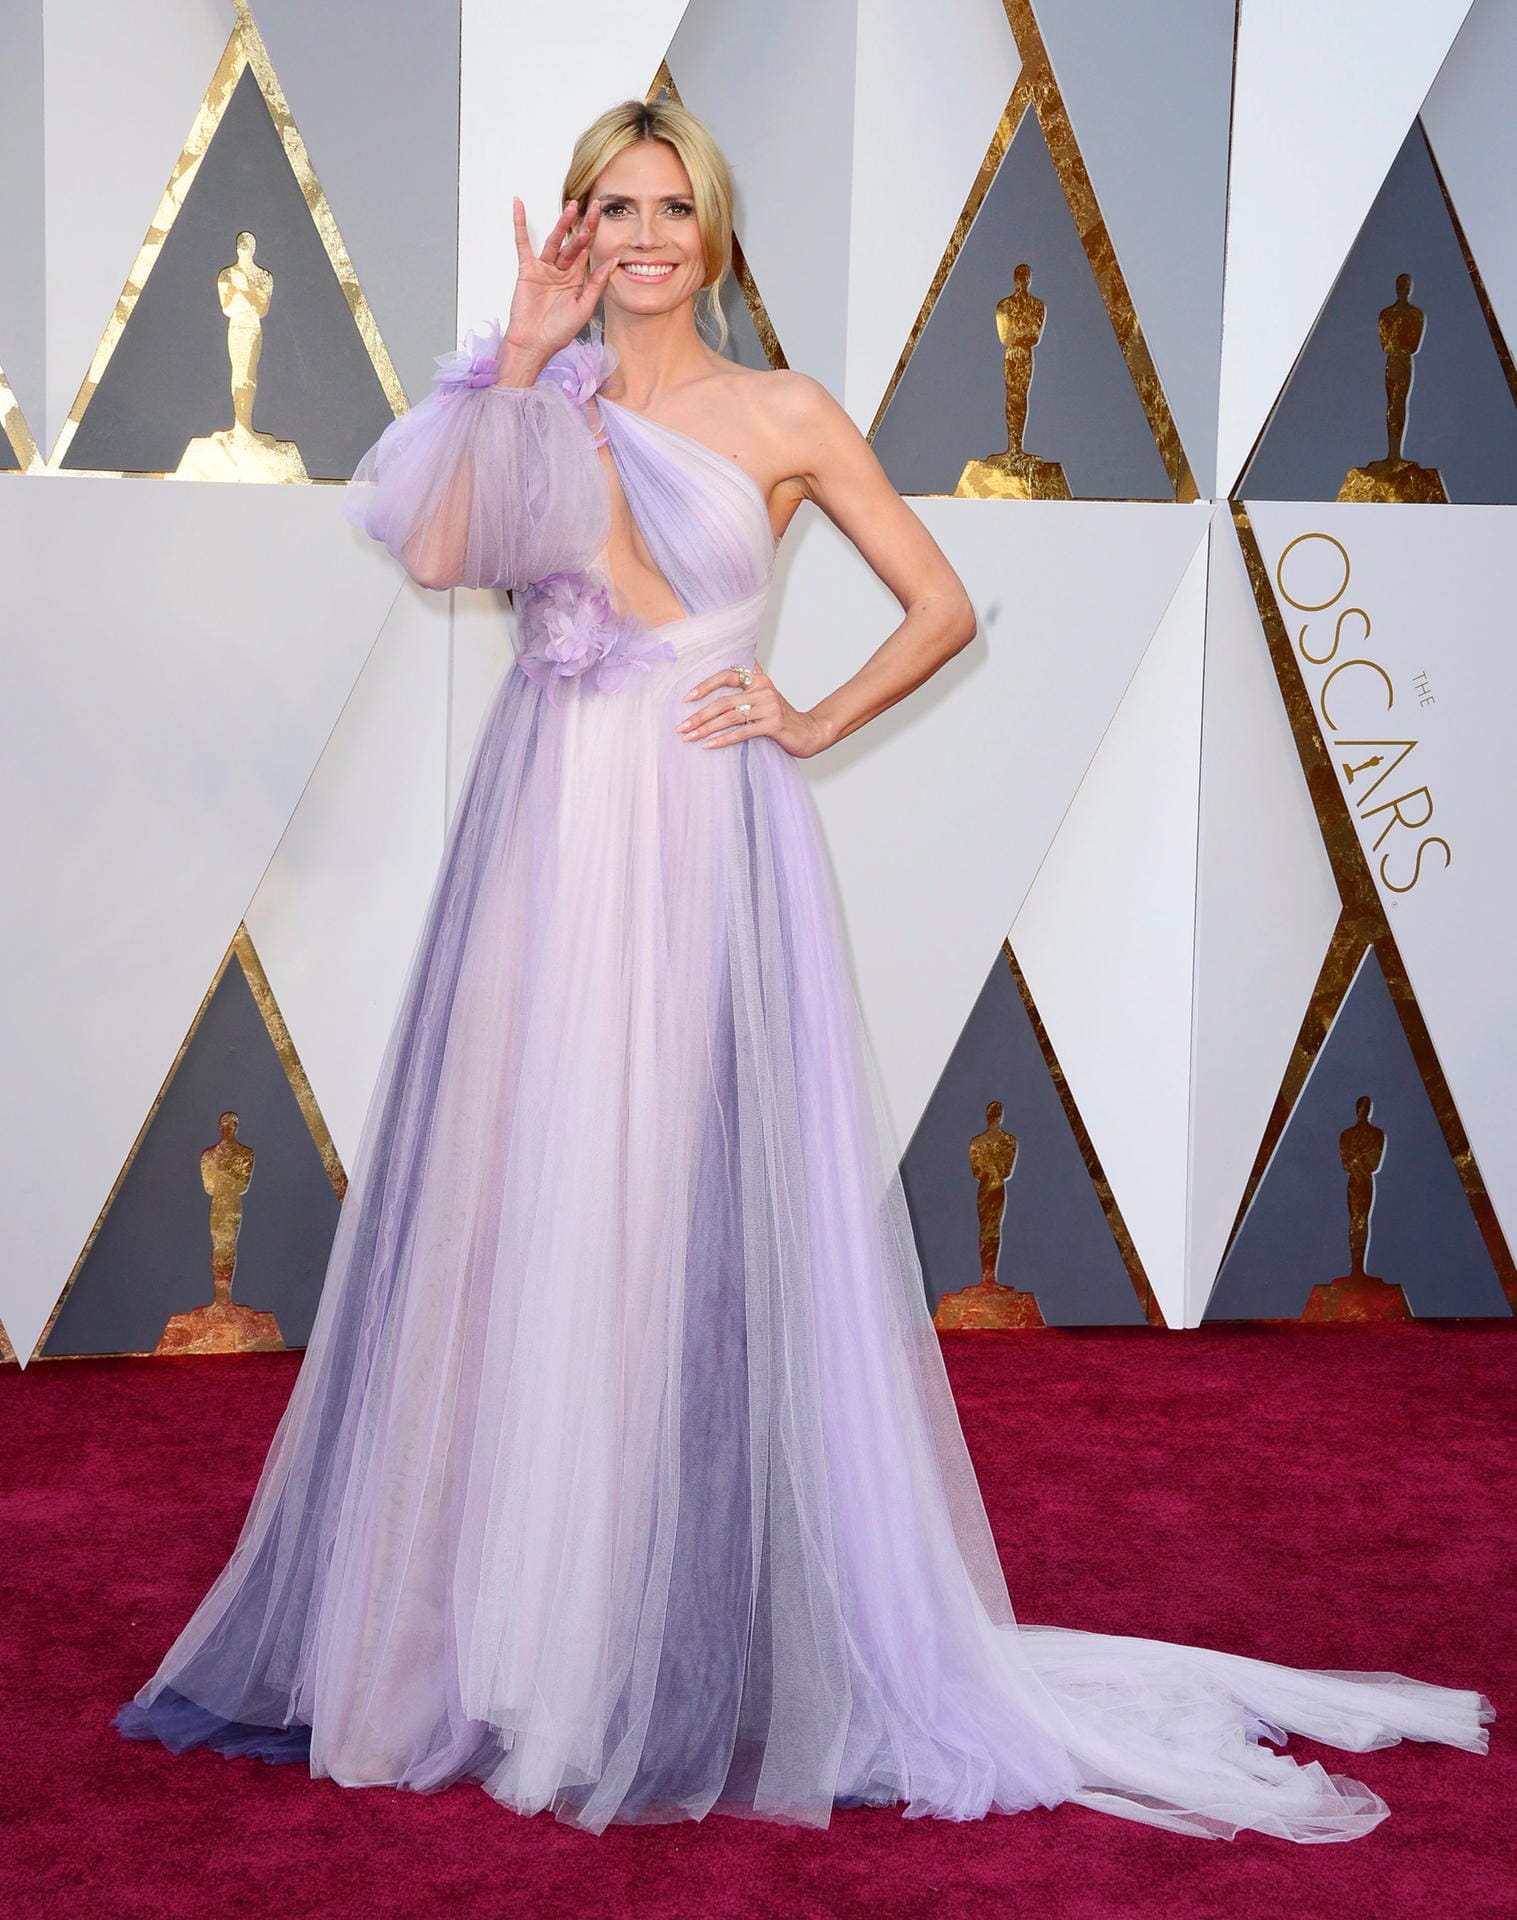 Der Albtraum einer jeder Promi-Dame: Das Grusel-Outfit der Oscar-Nacht zu tragen. Dieses Jahr traf es "Germany's next Topmodel"-Chefin Heidi Klum, die eine lilafarbene, schulterfreie Robe aus dem Hause Marchesa trug.